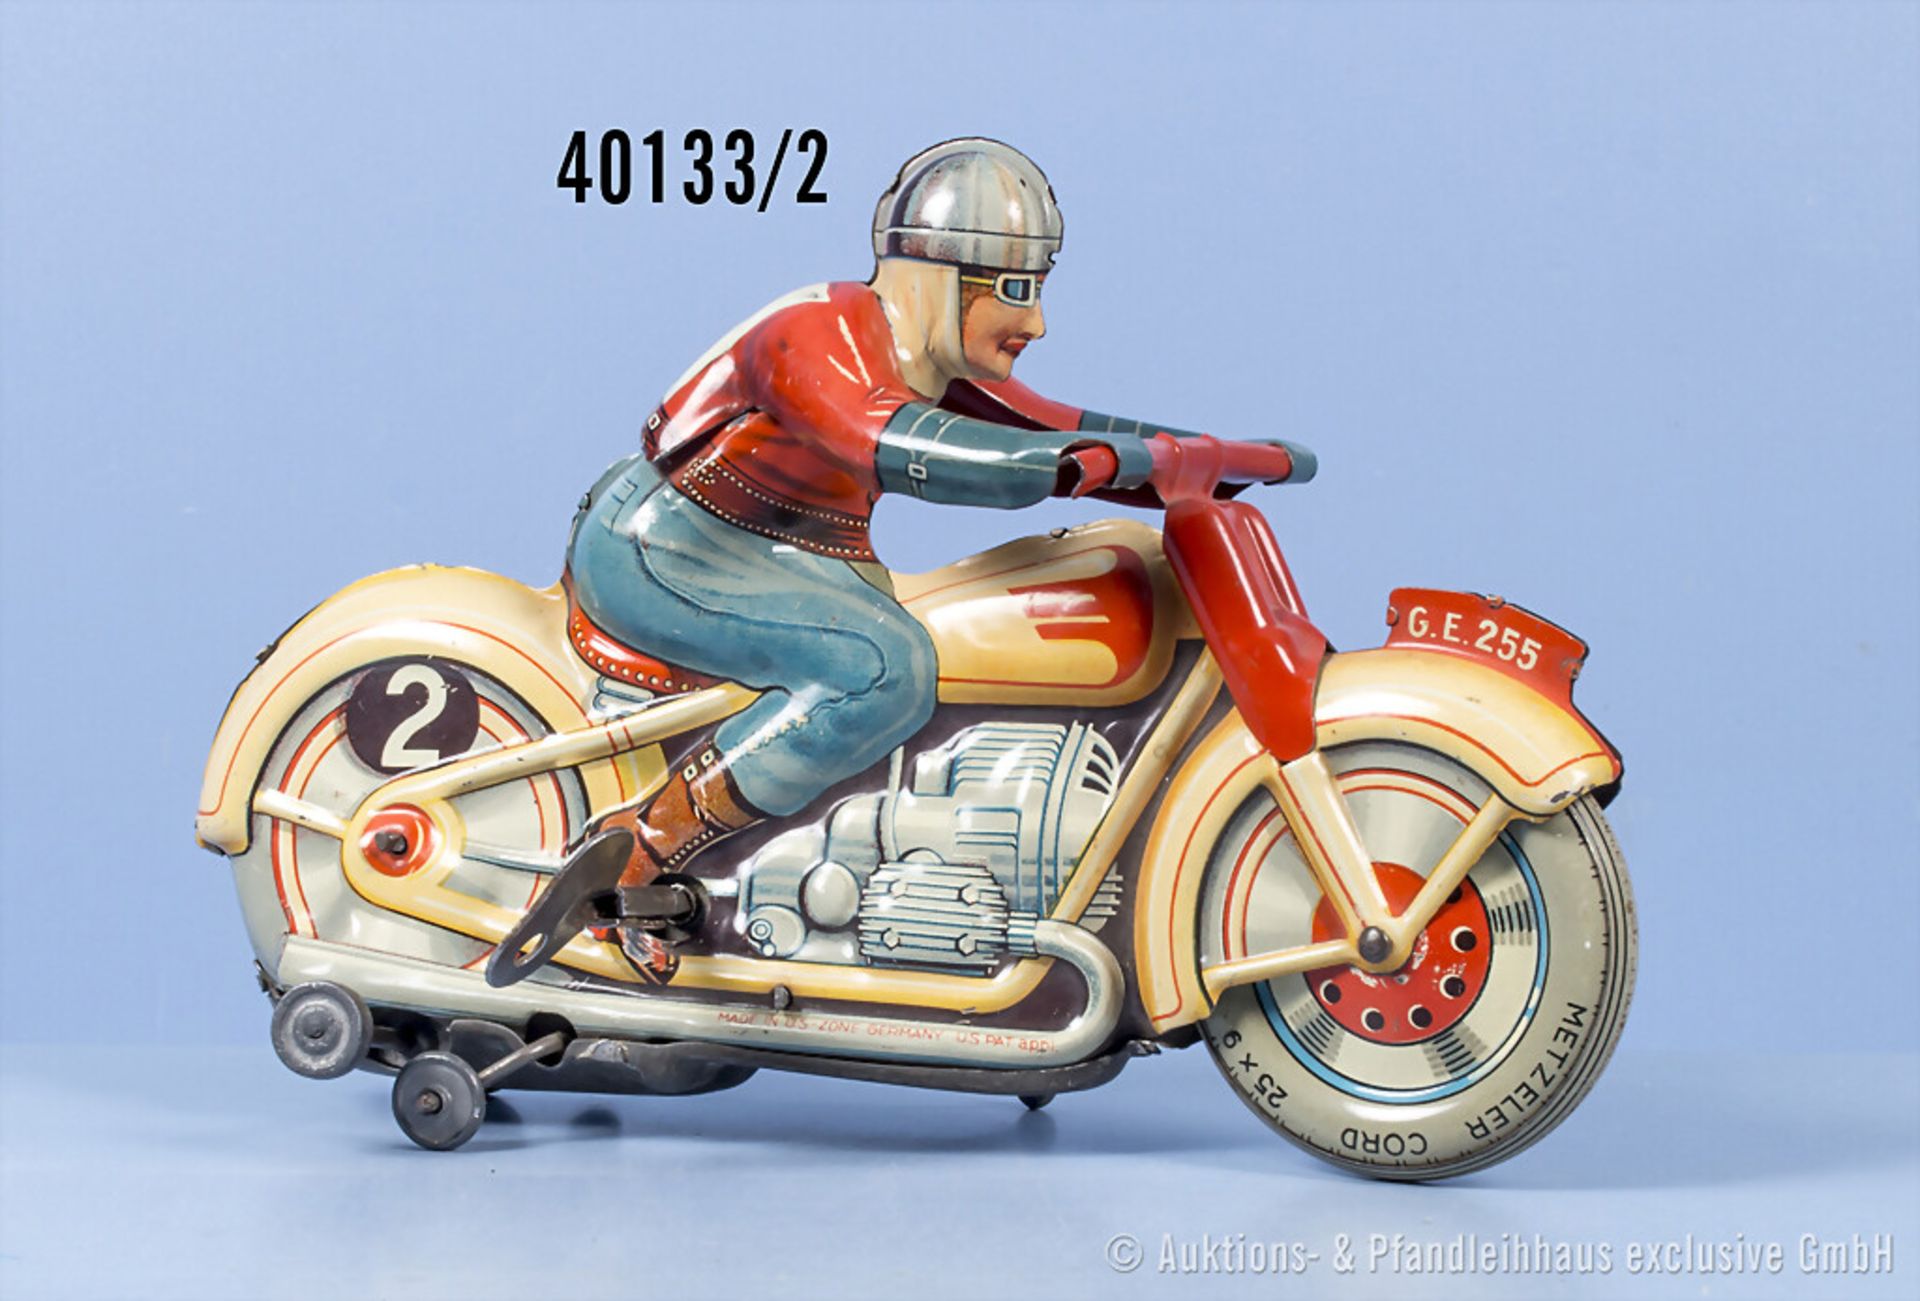 Technofix Motorrad GE 255, Blech, US Z. Germany, 18 cm, Uhrwerk, Haltelasche Helm ... - Bild 2 aus 2